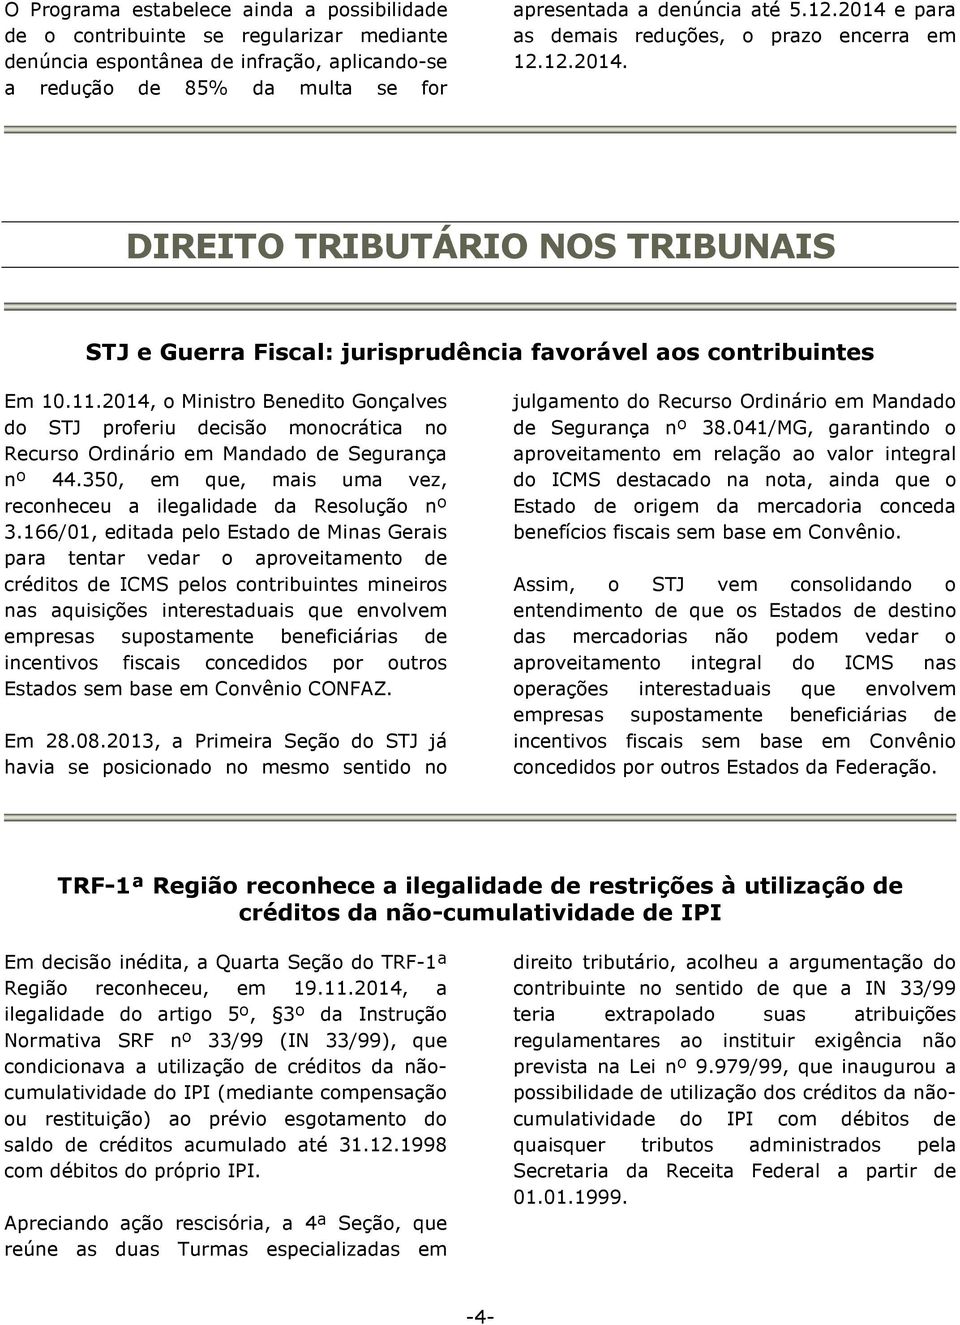 2014, o Ministro Benedito Gonçalves do STJ proferiu decisão monocrática no Recurso Ordinário em Mandado de Segurança nº 44.350, em que, mais uma vez, reconheceu a ilegalidade da Resolução nº 3.